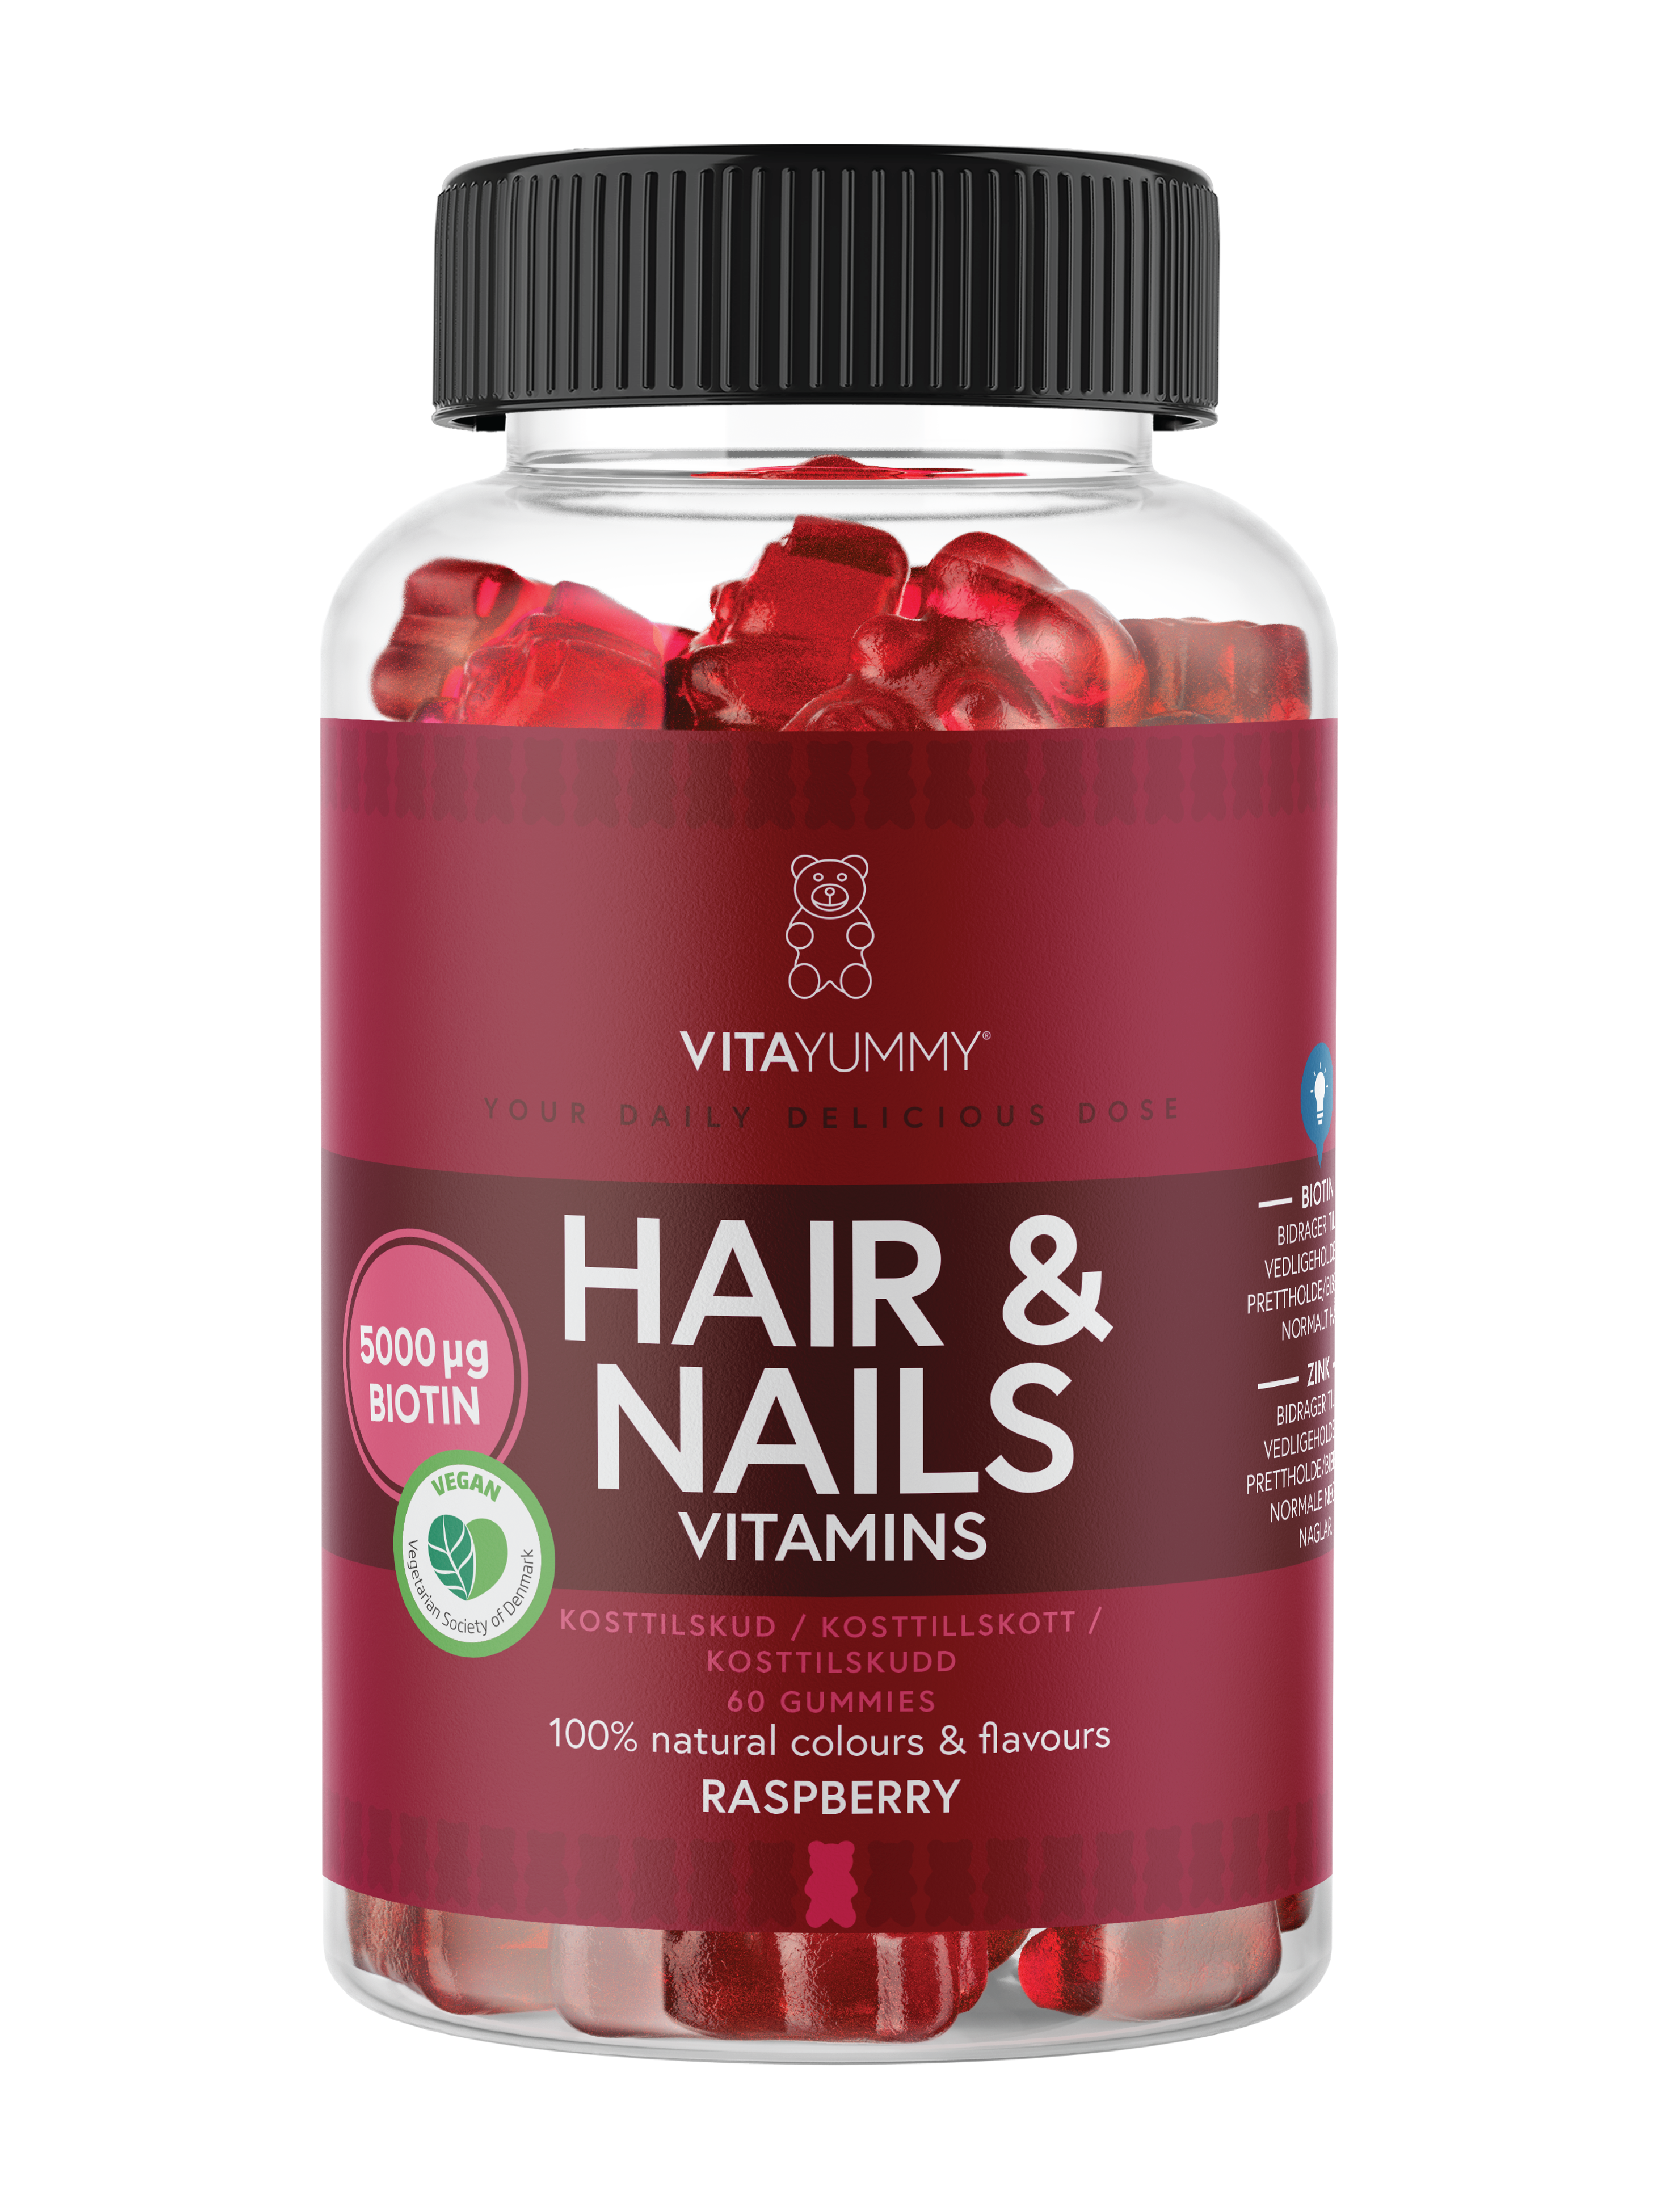 VitaYummy Hair & Nails Vitamins, Bringebær, 60 stk.